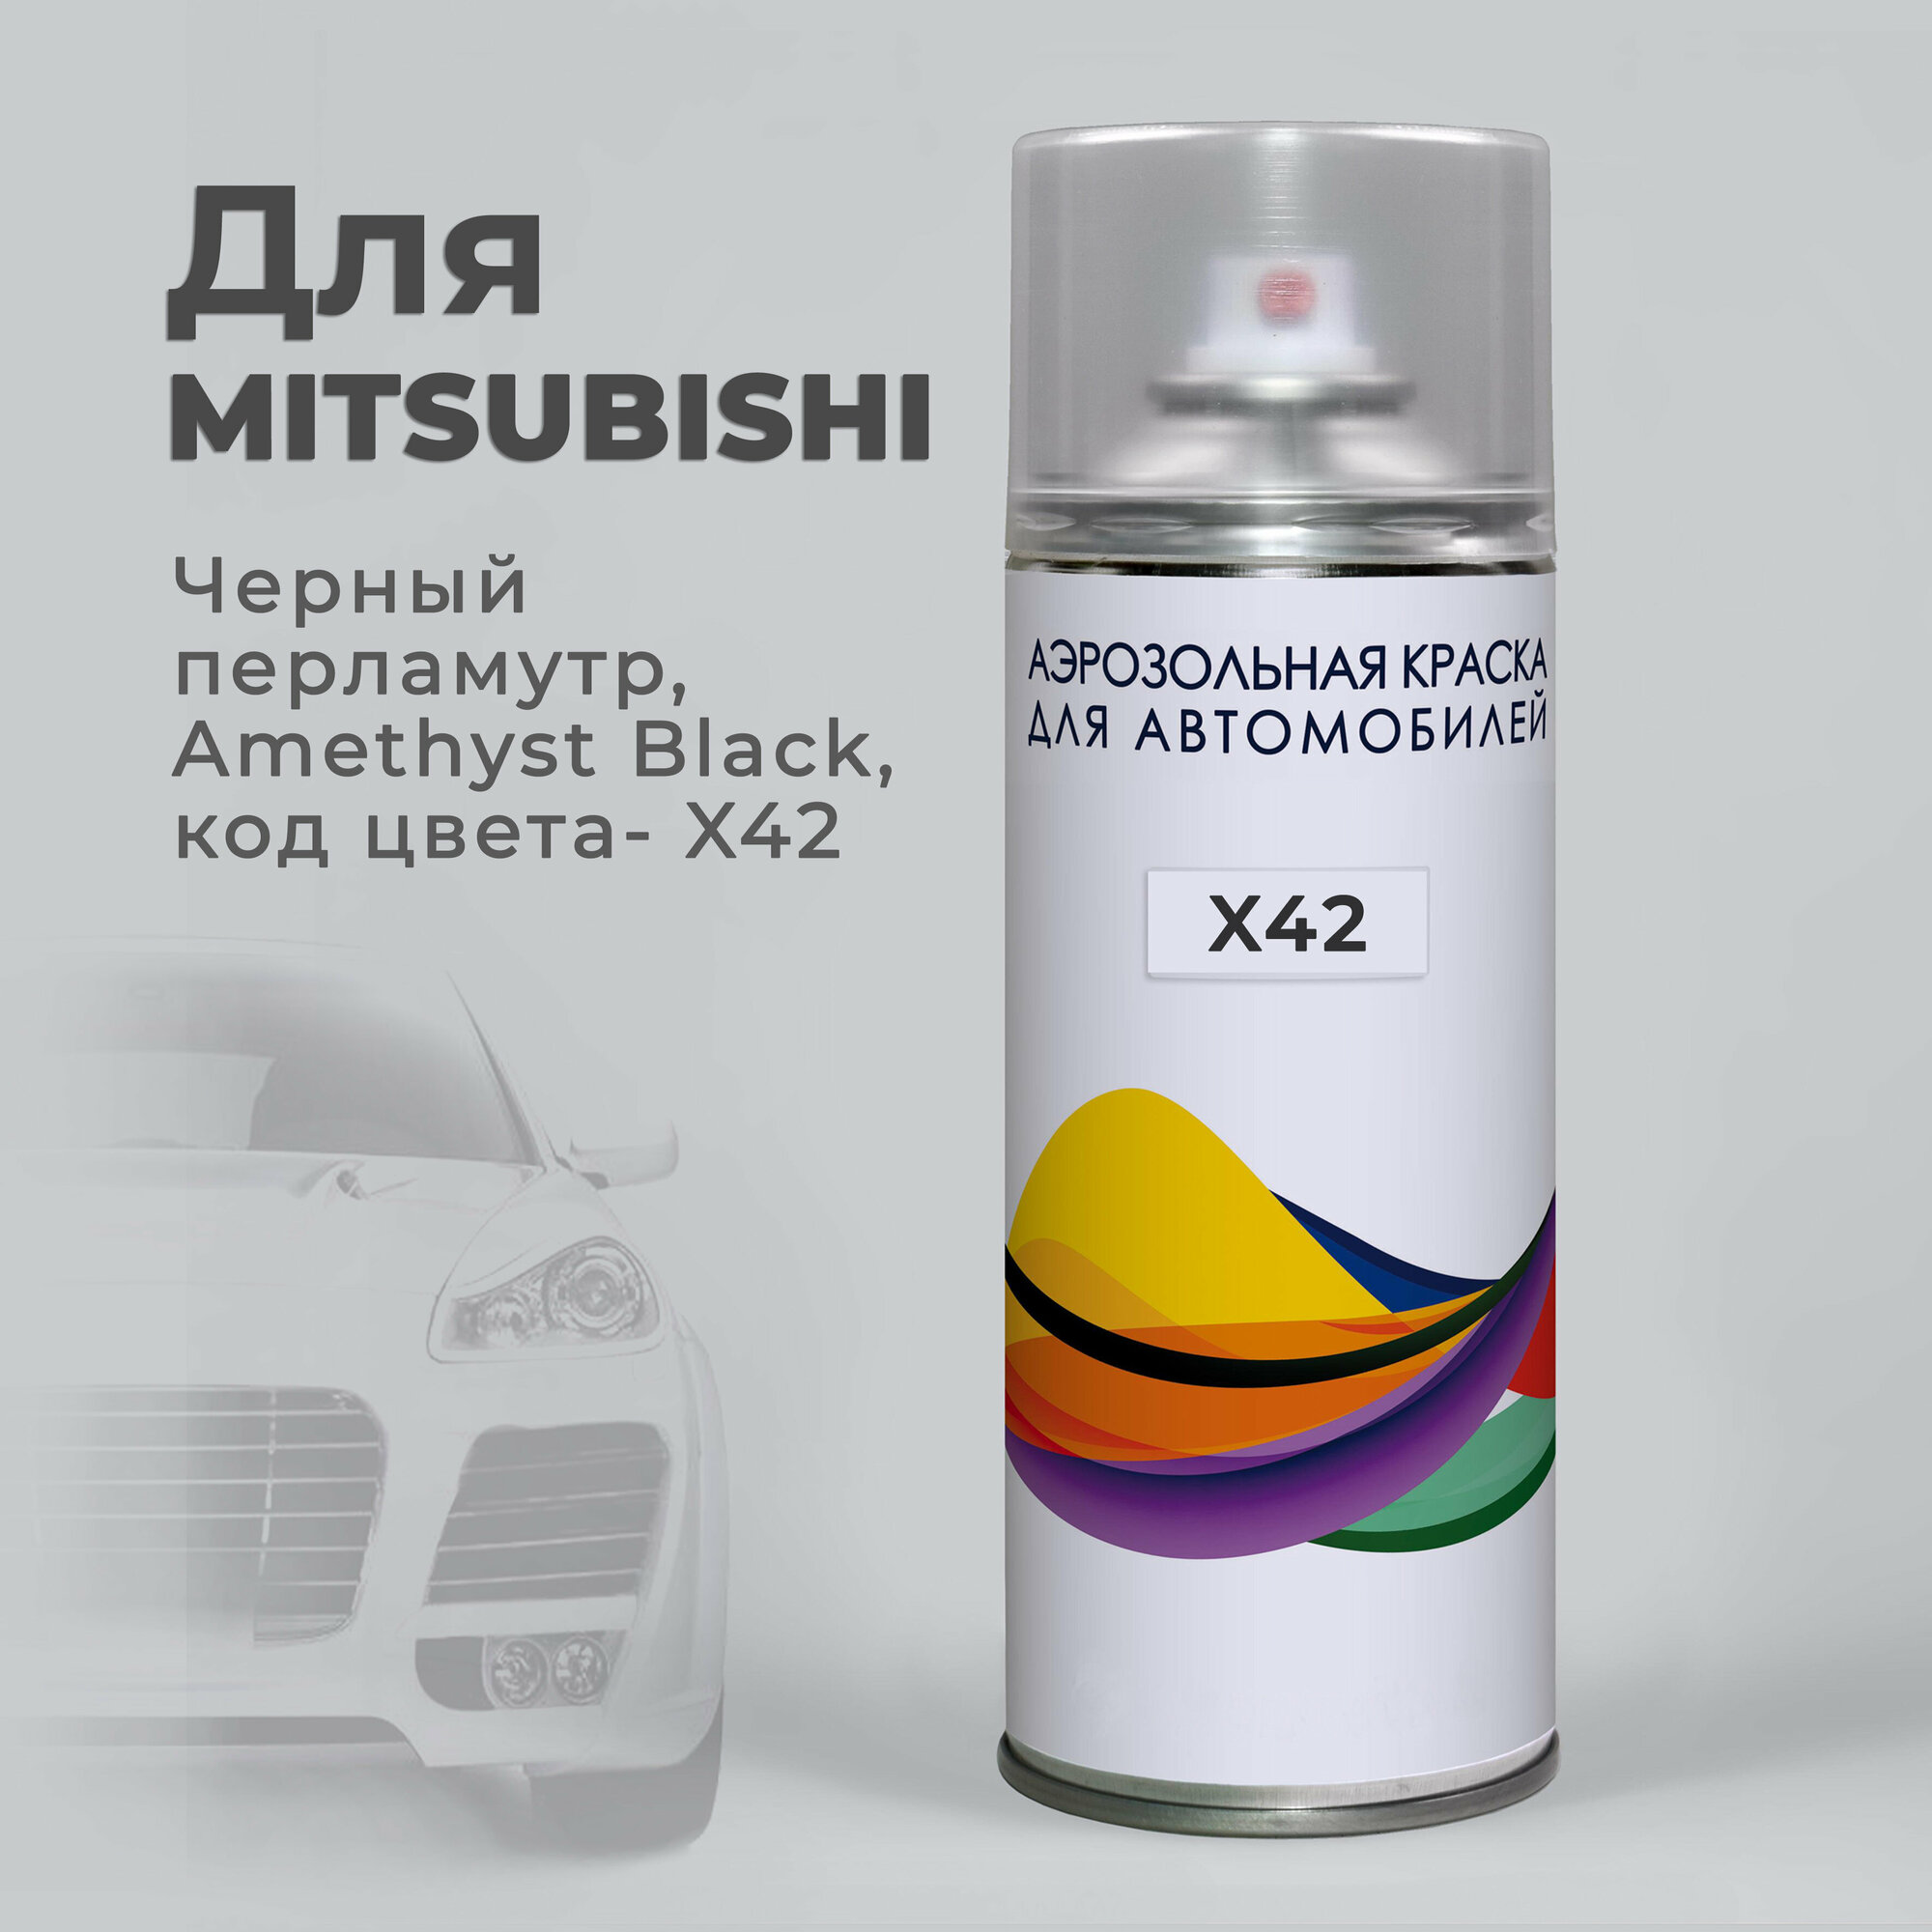 Краска аэрозольная для авто по коду X42 для Mitsubishi черный перламутр, Amethyst Black / Аэрозольный баллон 400 мл